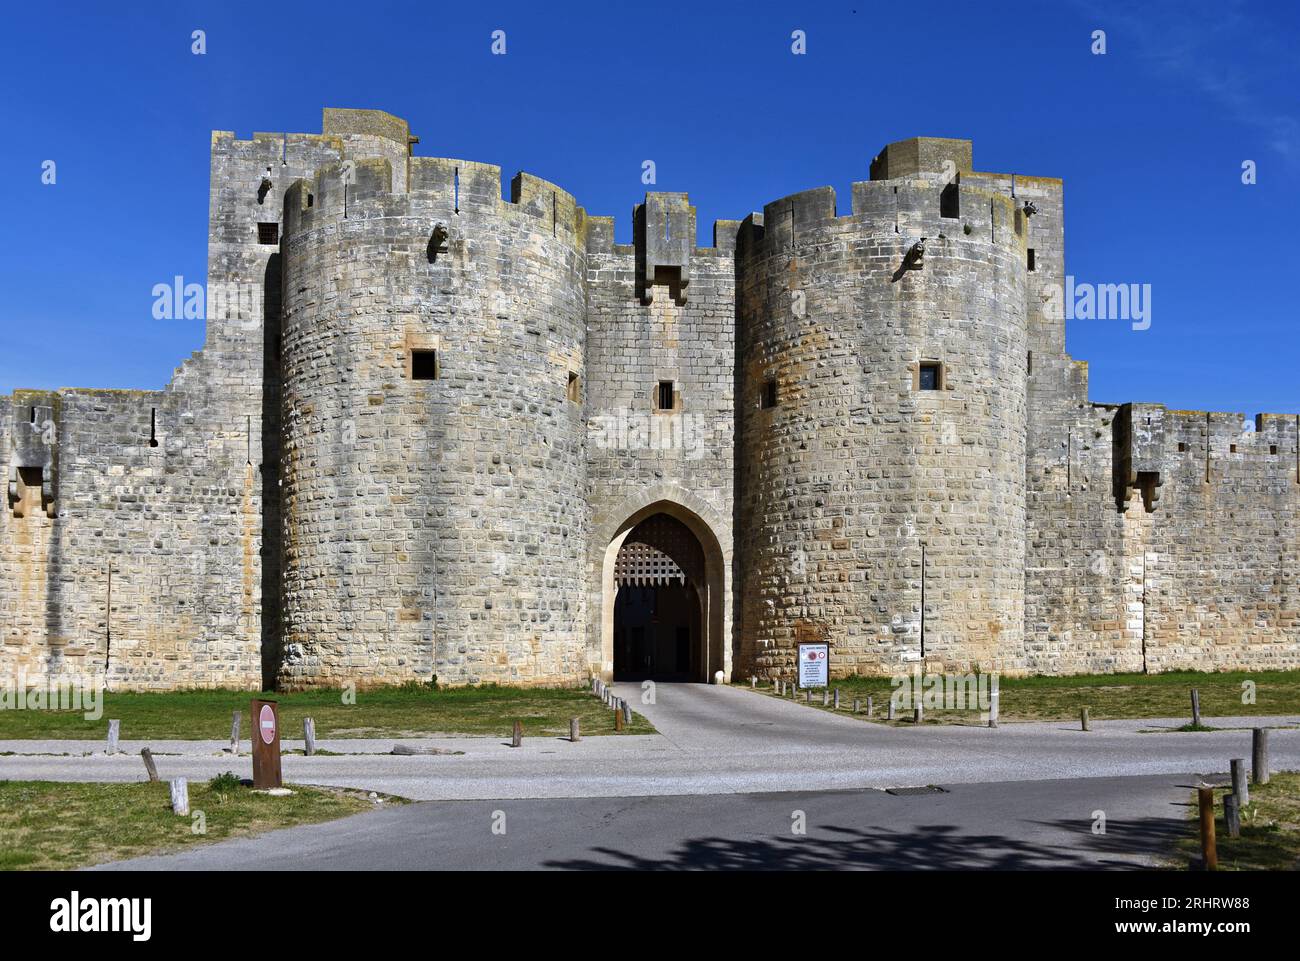 Mur de ville et porte de ville, France, Okzitanien, Aigues mortes Banque D'Images